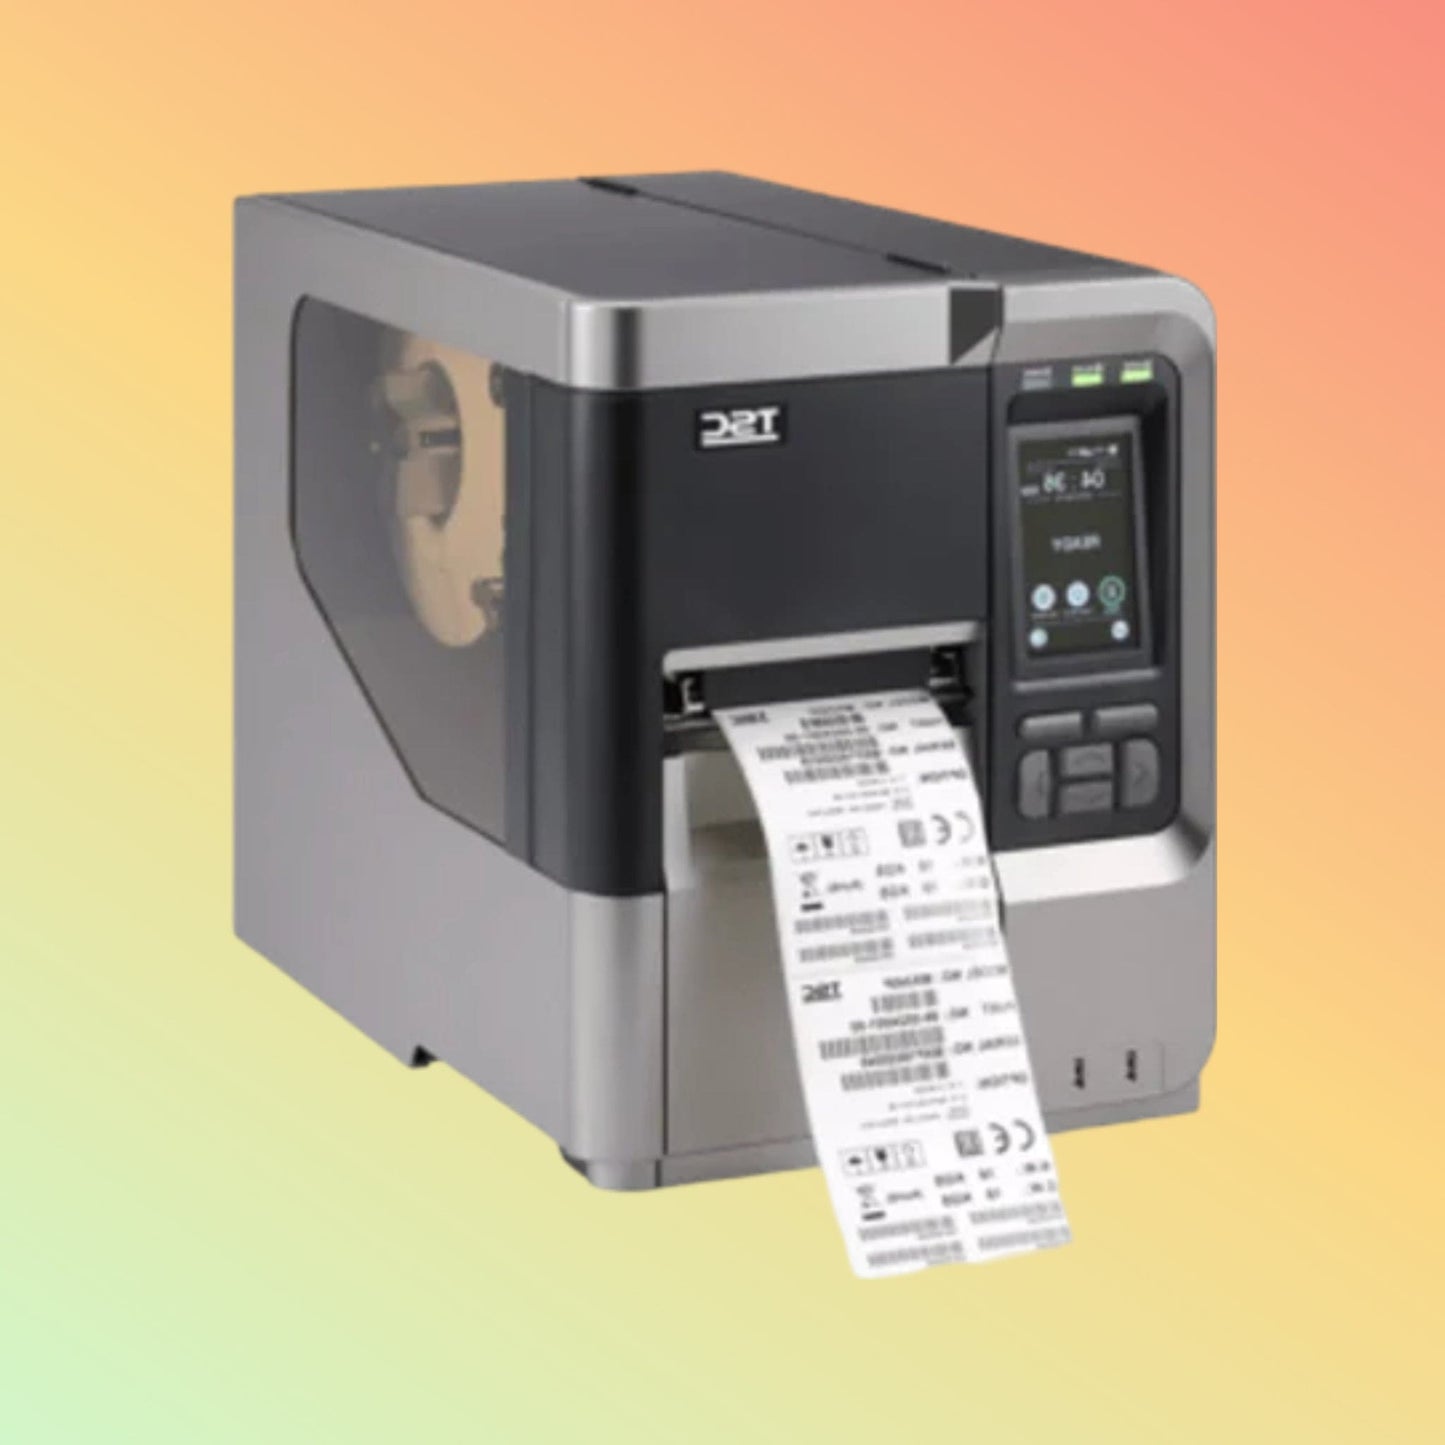 TSC MX240P Barcode Printer - NEOTECH